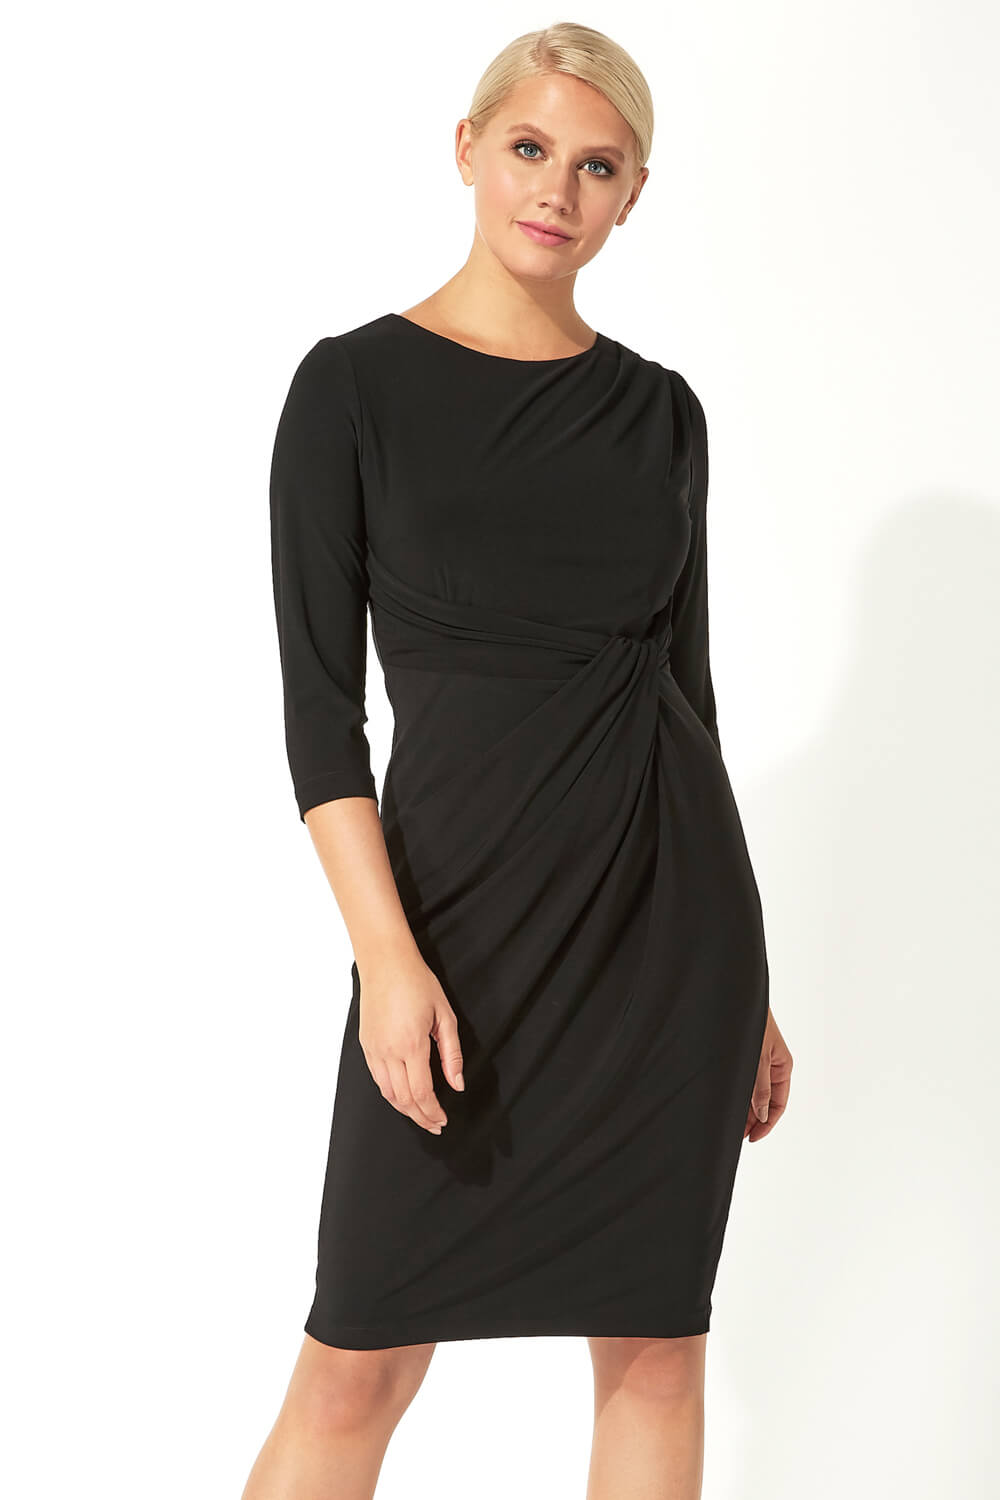 Black 3/4 Sleeve Twist Waist Dress, Image 1 of 5